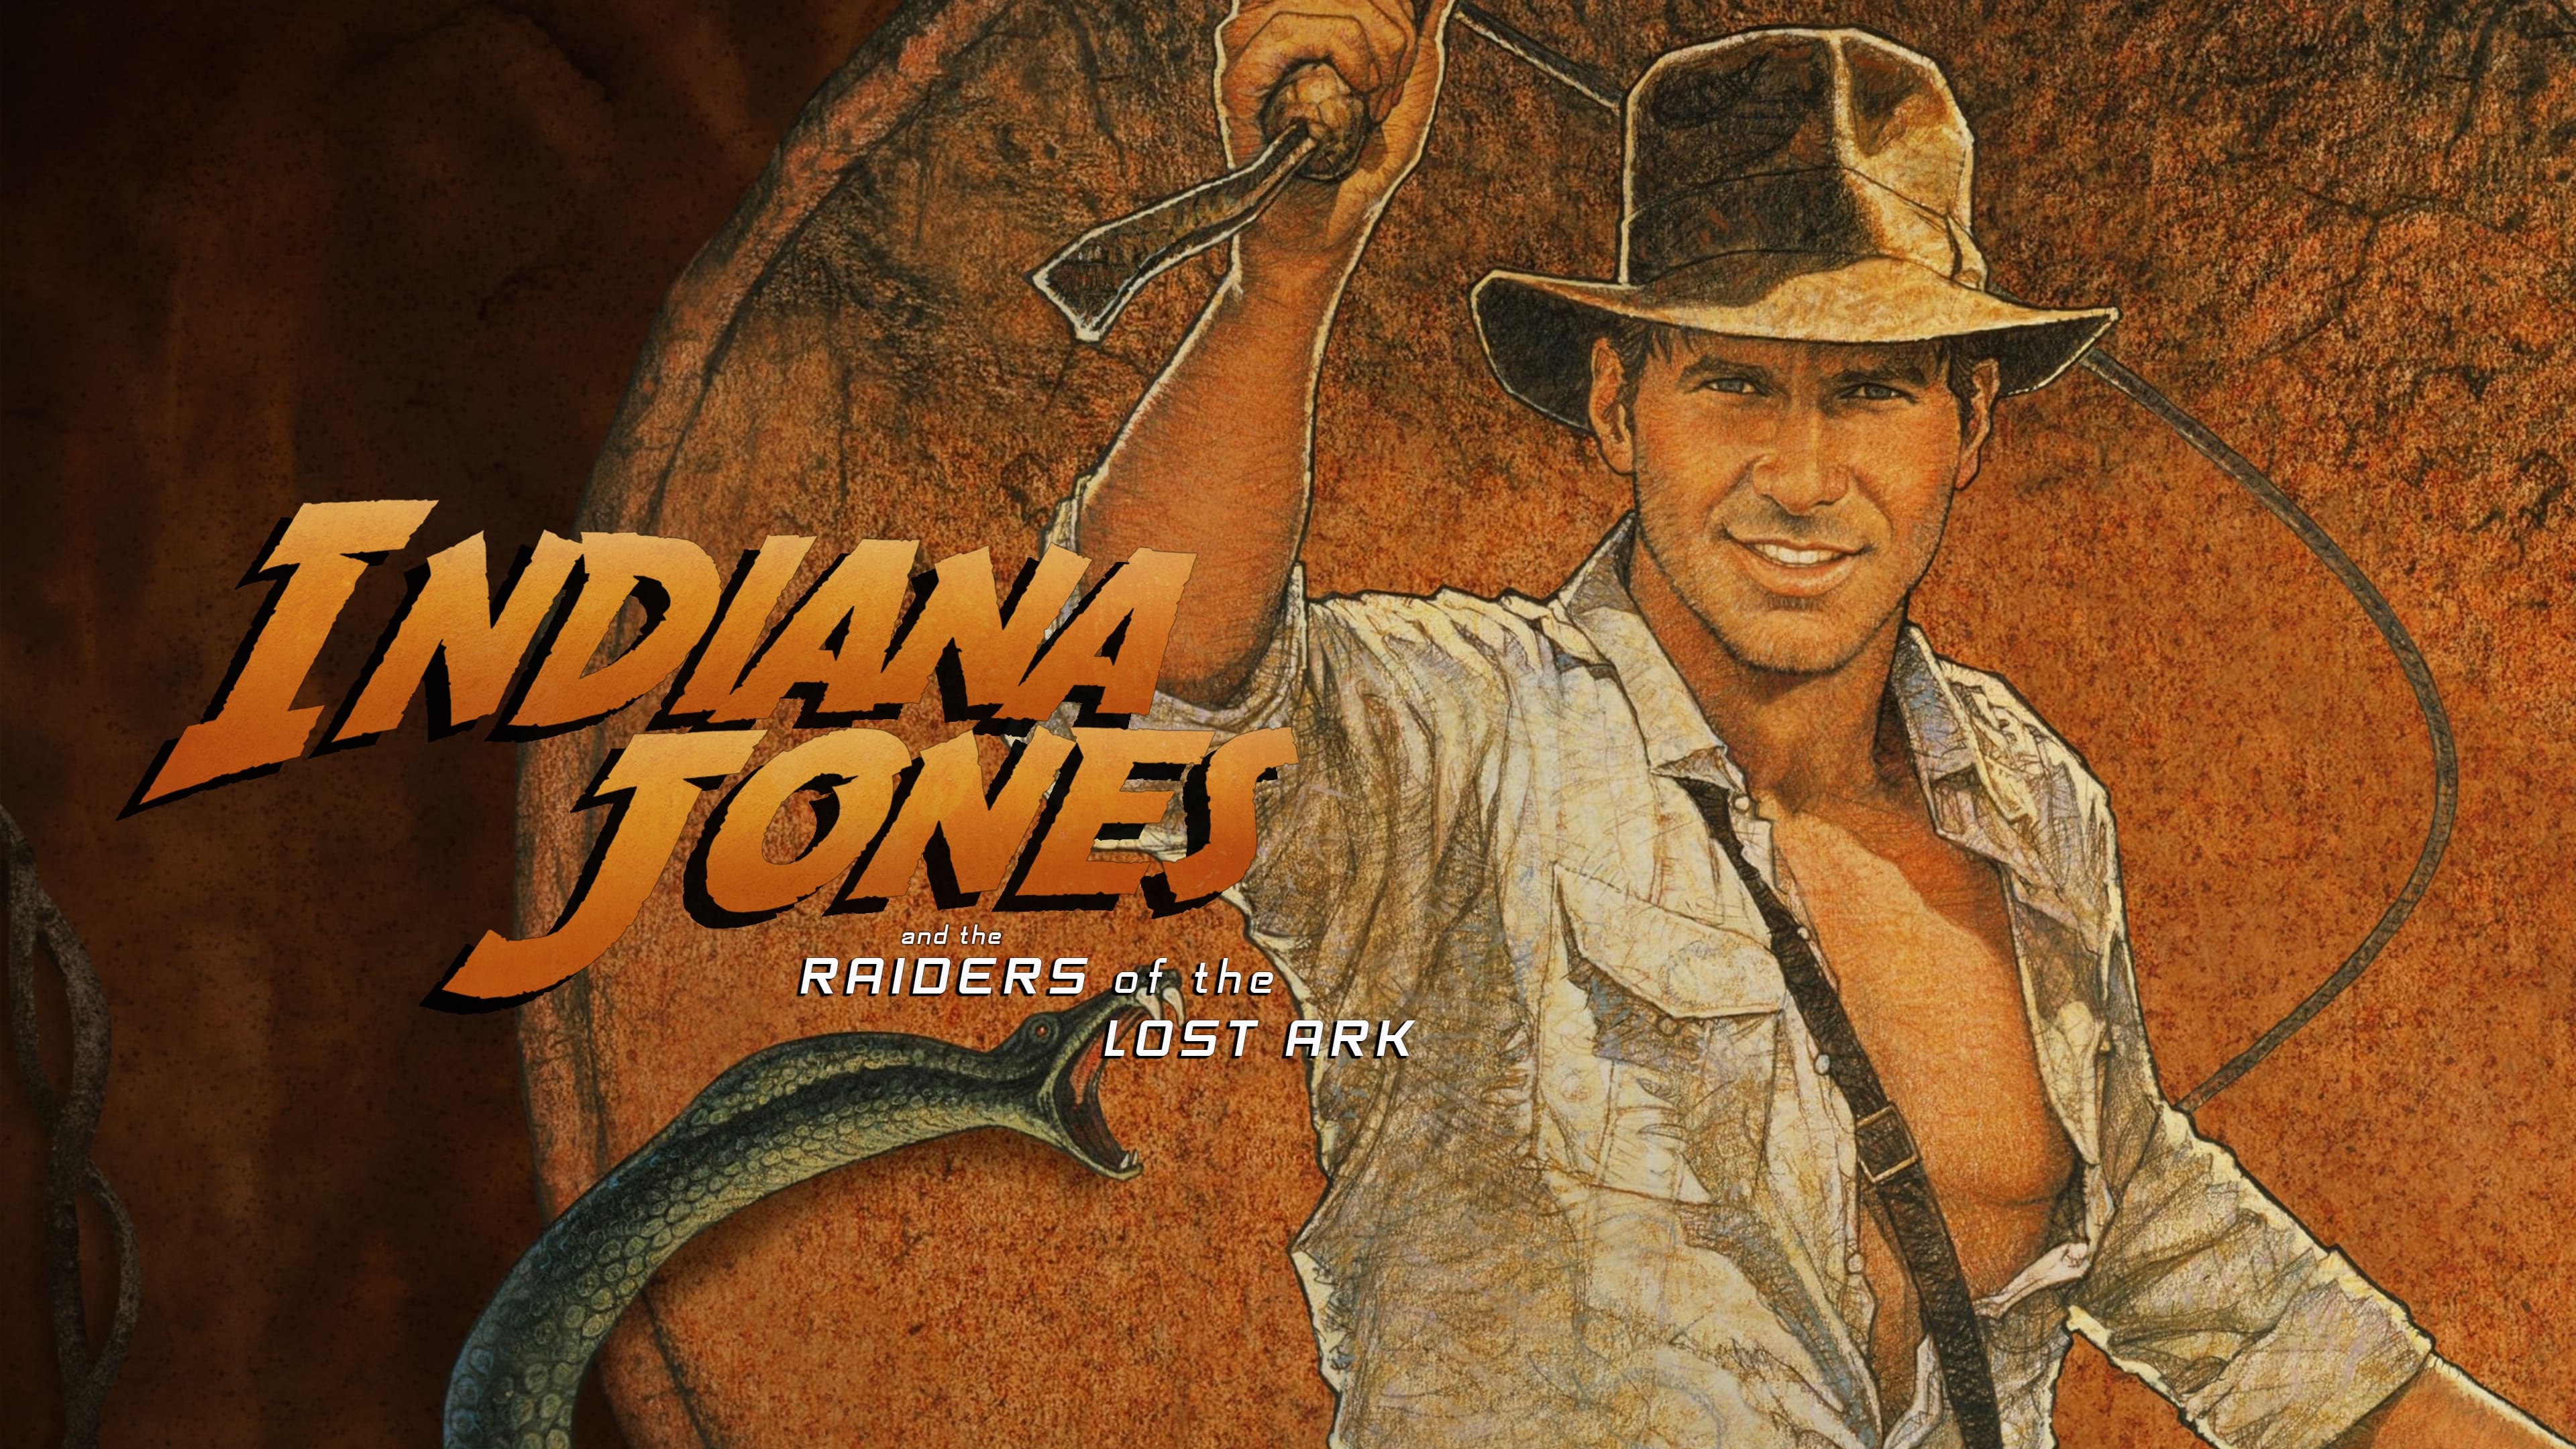 Indiana Jones și căutătorii arcei pierdute (1981)